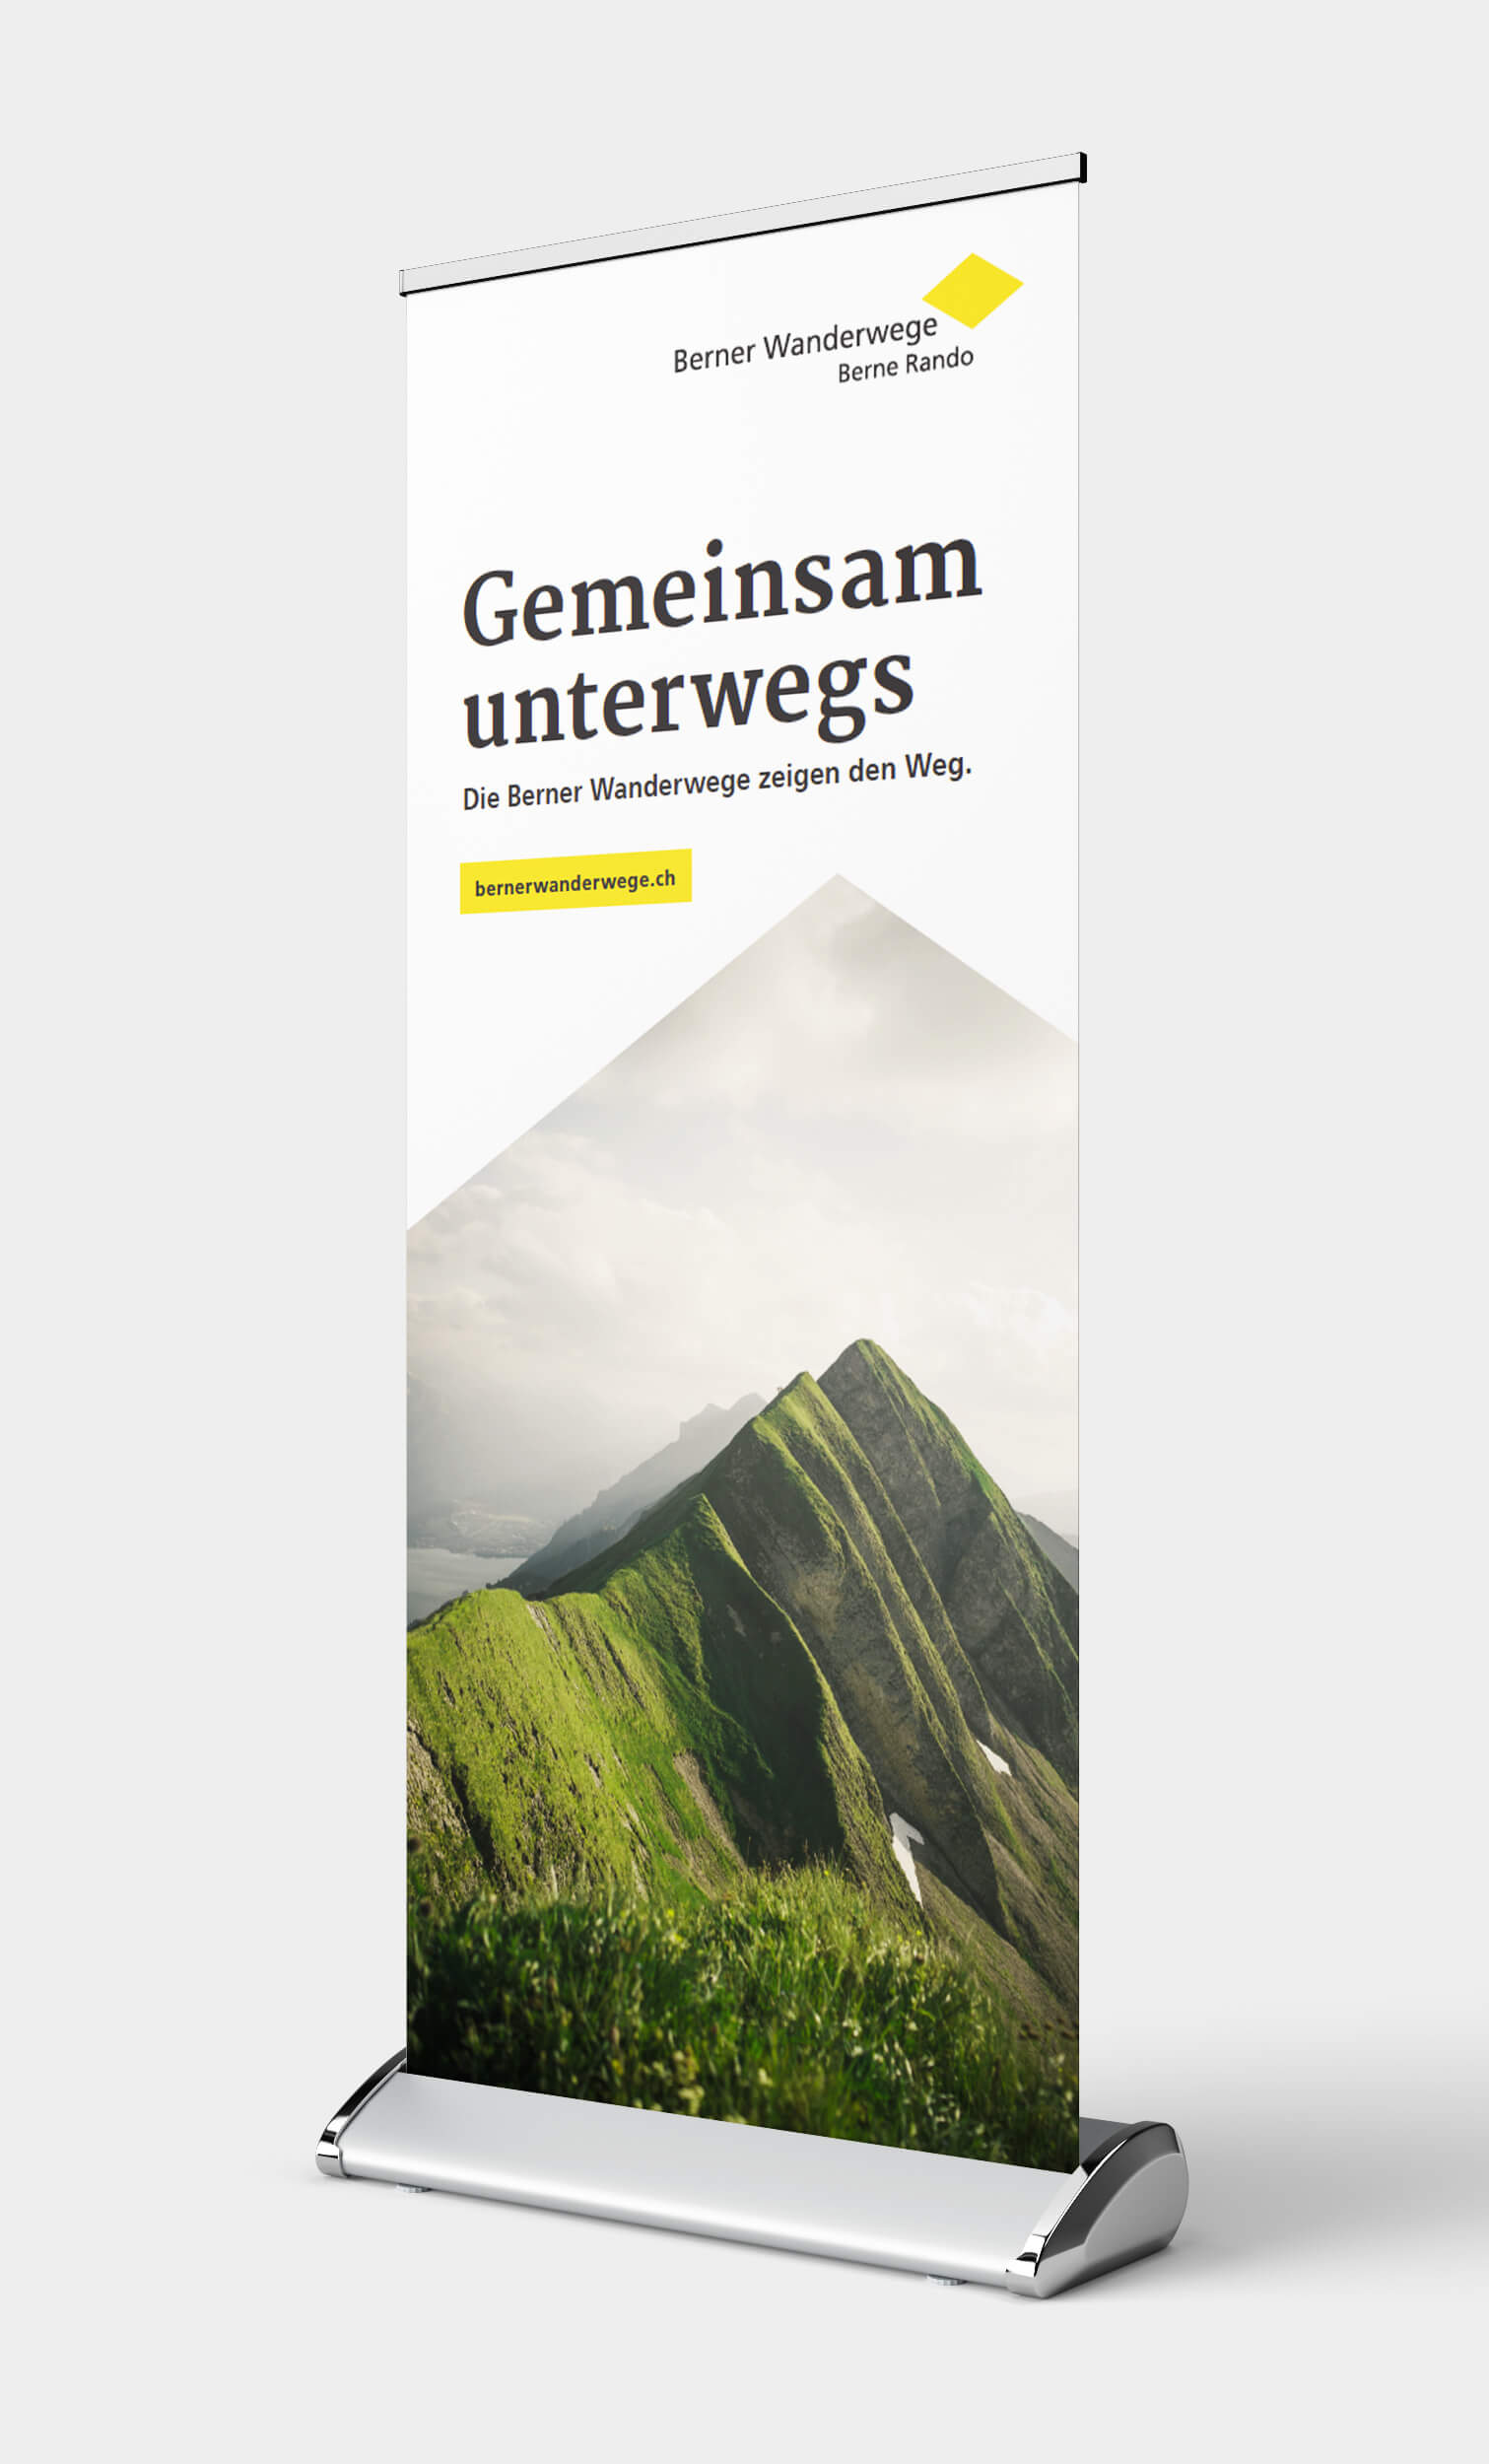 Ein Flyer wirbt für die Berner Wanderwege: «Gemeinsam unterwegs: Die Berner Wanderwege zeigen den Weg – bernerwanderwege.ch»